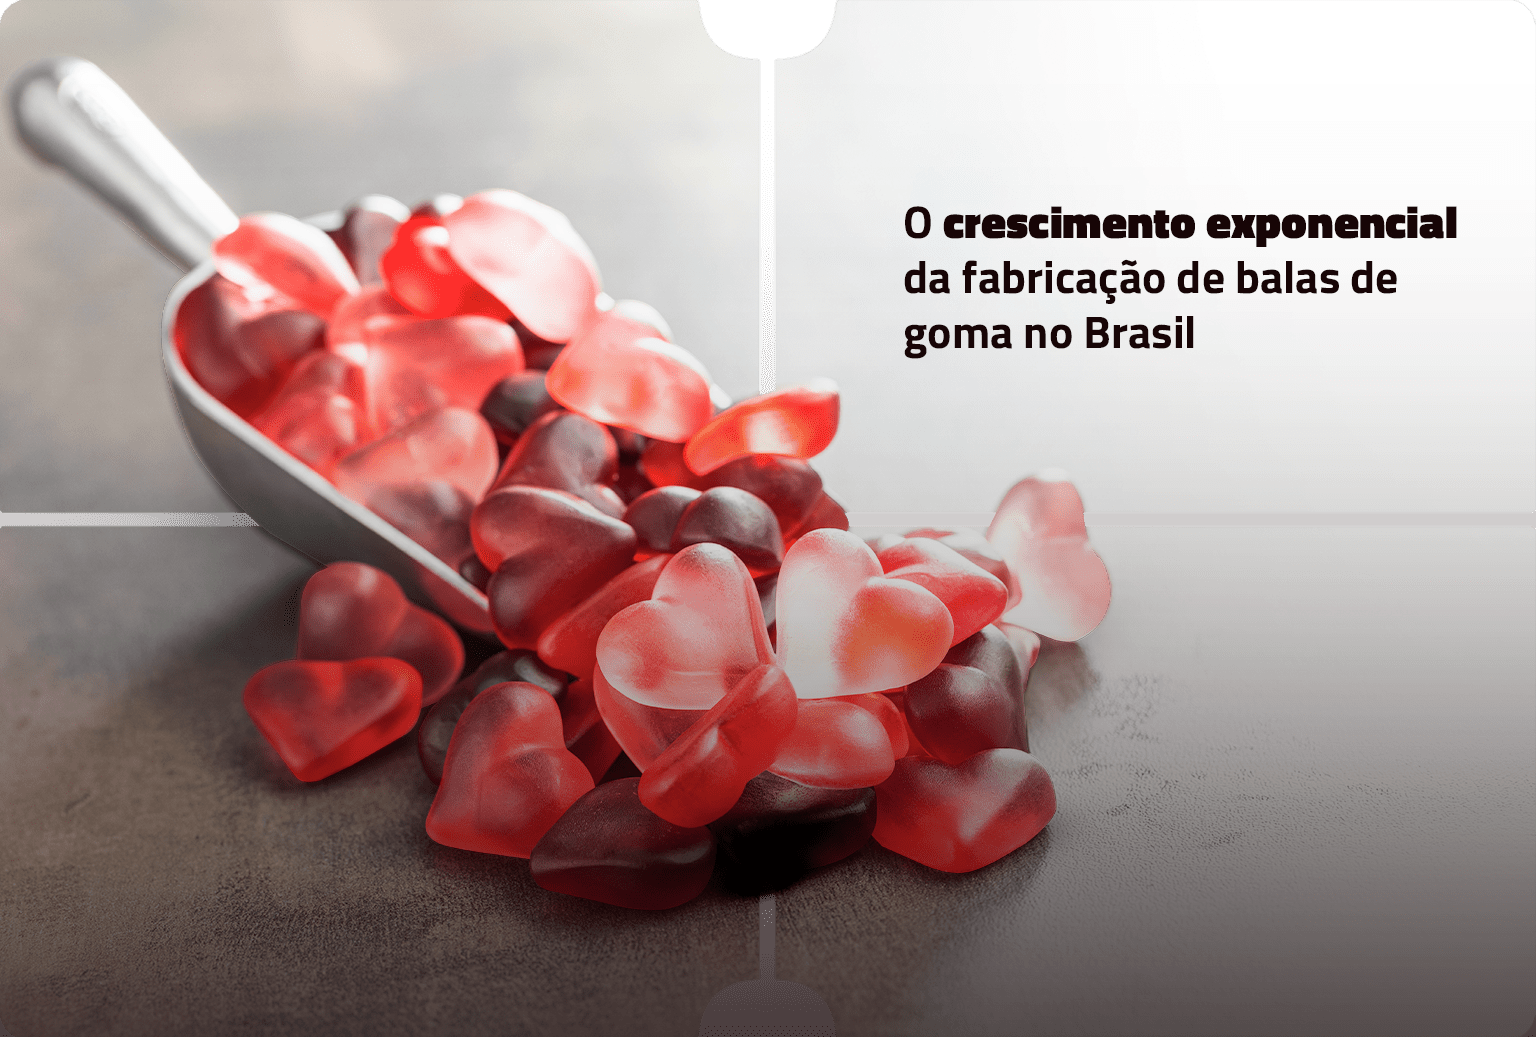 O crescimento exponencial da fabricação de balas de goma no Brasil